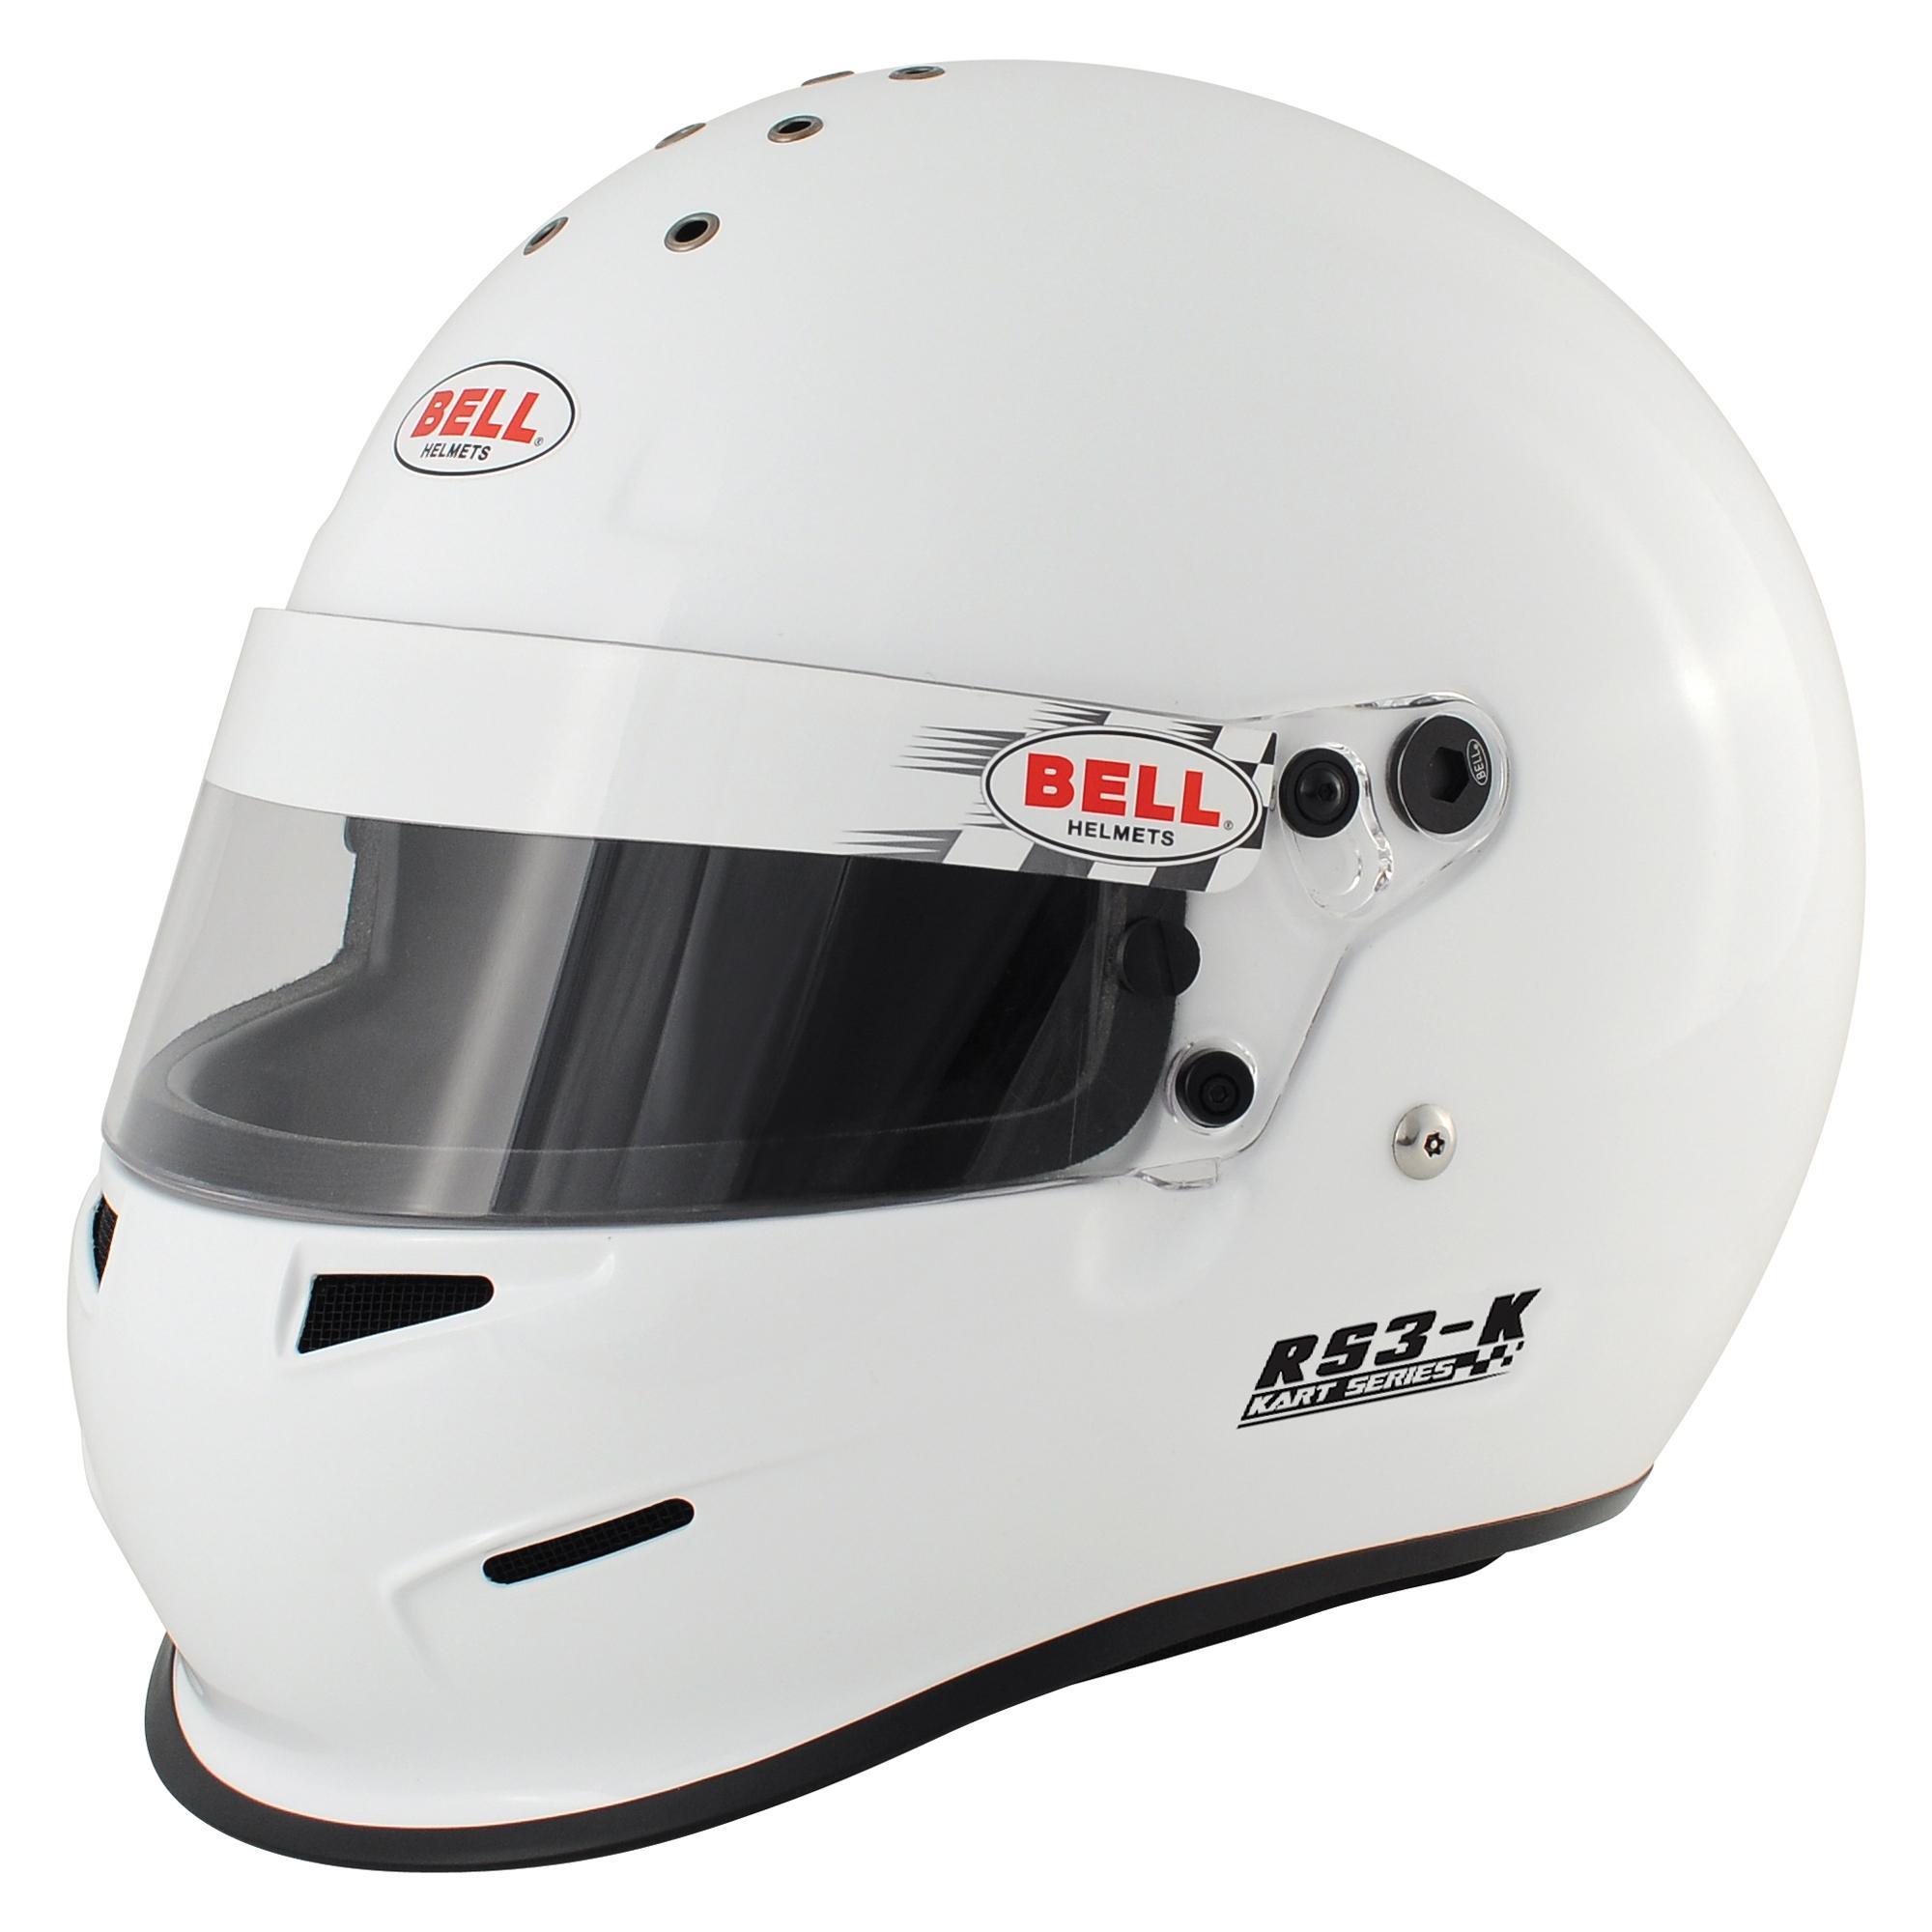 Bell RS3 K Full Face Kart Helmet White Snell K2010 Approved